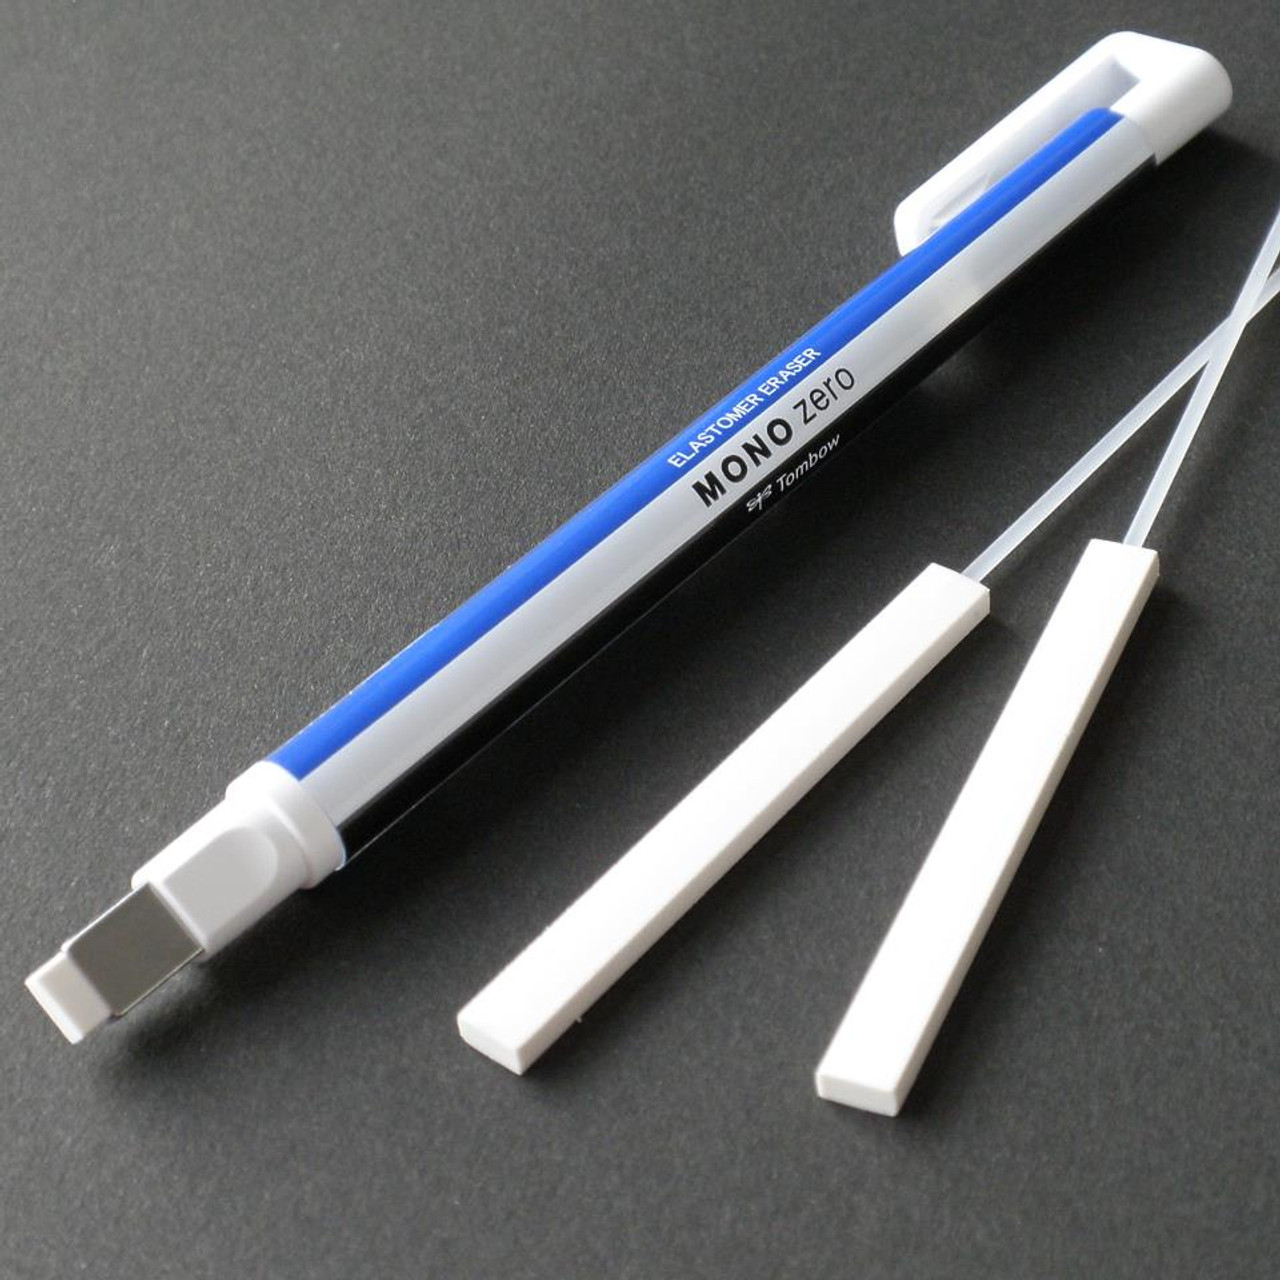 Tombow MONO Pencil & Eraser Set